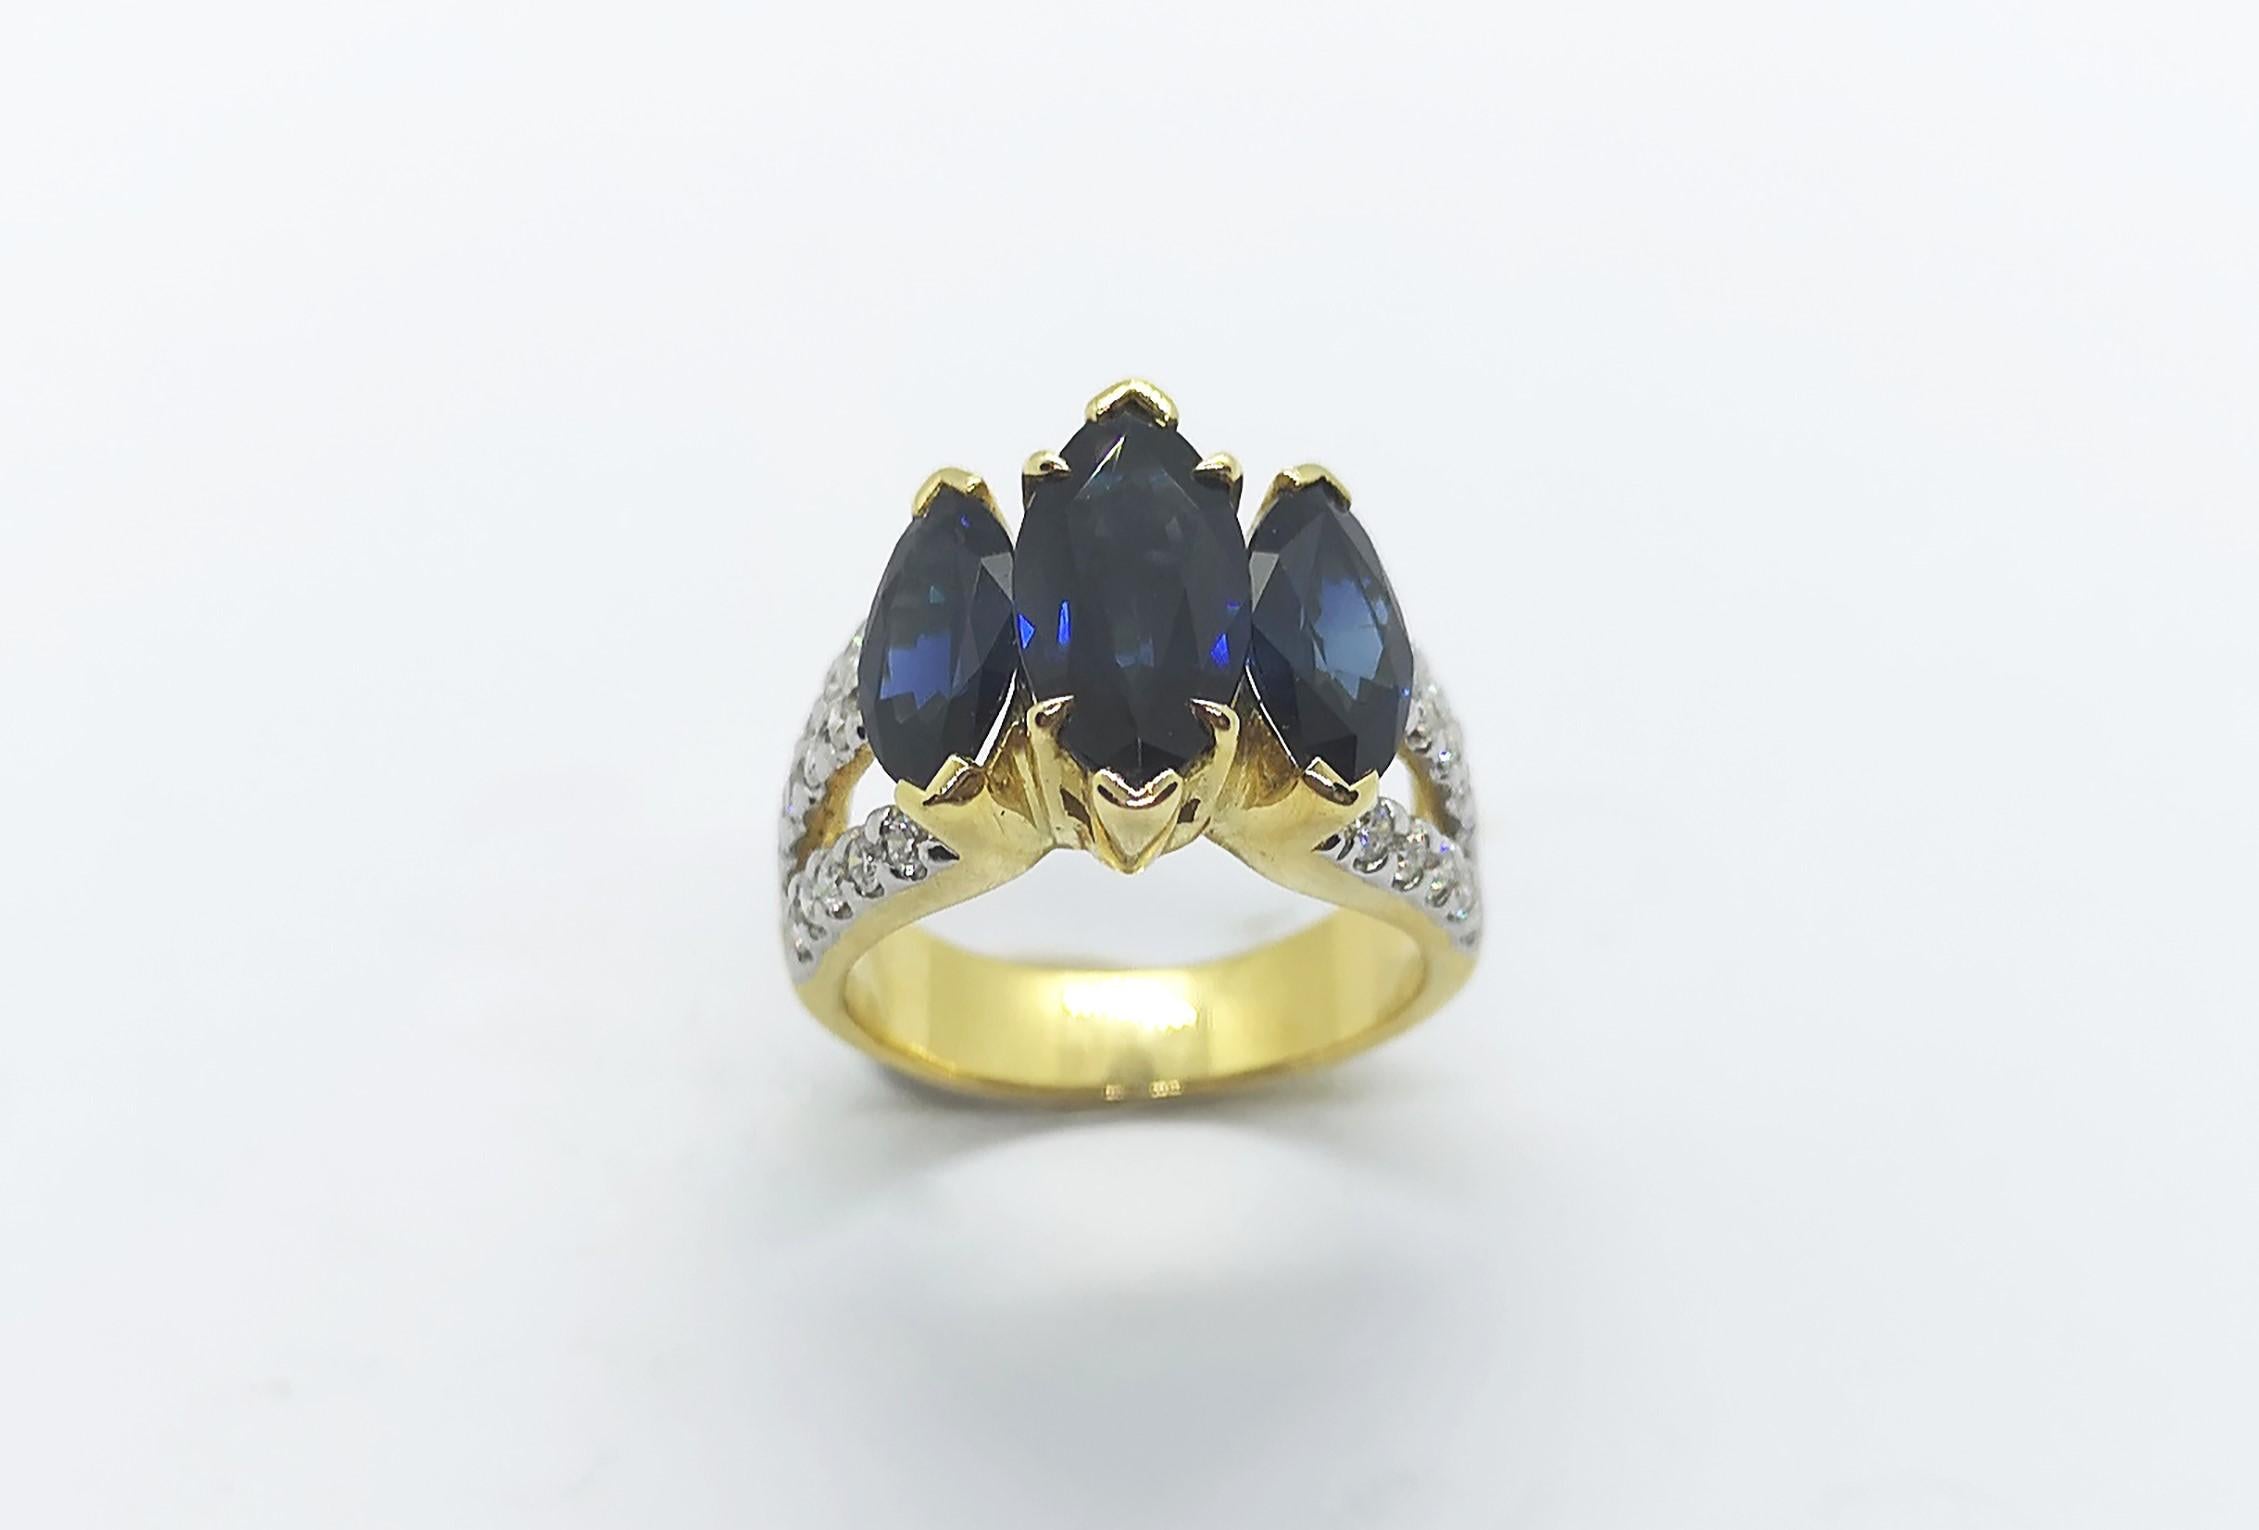 Blauer Saphir 4,16 Karat mit Diamant 0,53 Karat Ring in 18 Karat Goldfassung

Breite: 1,5 cm
Länge: 1,4 cm 
Ringgröße: 50

